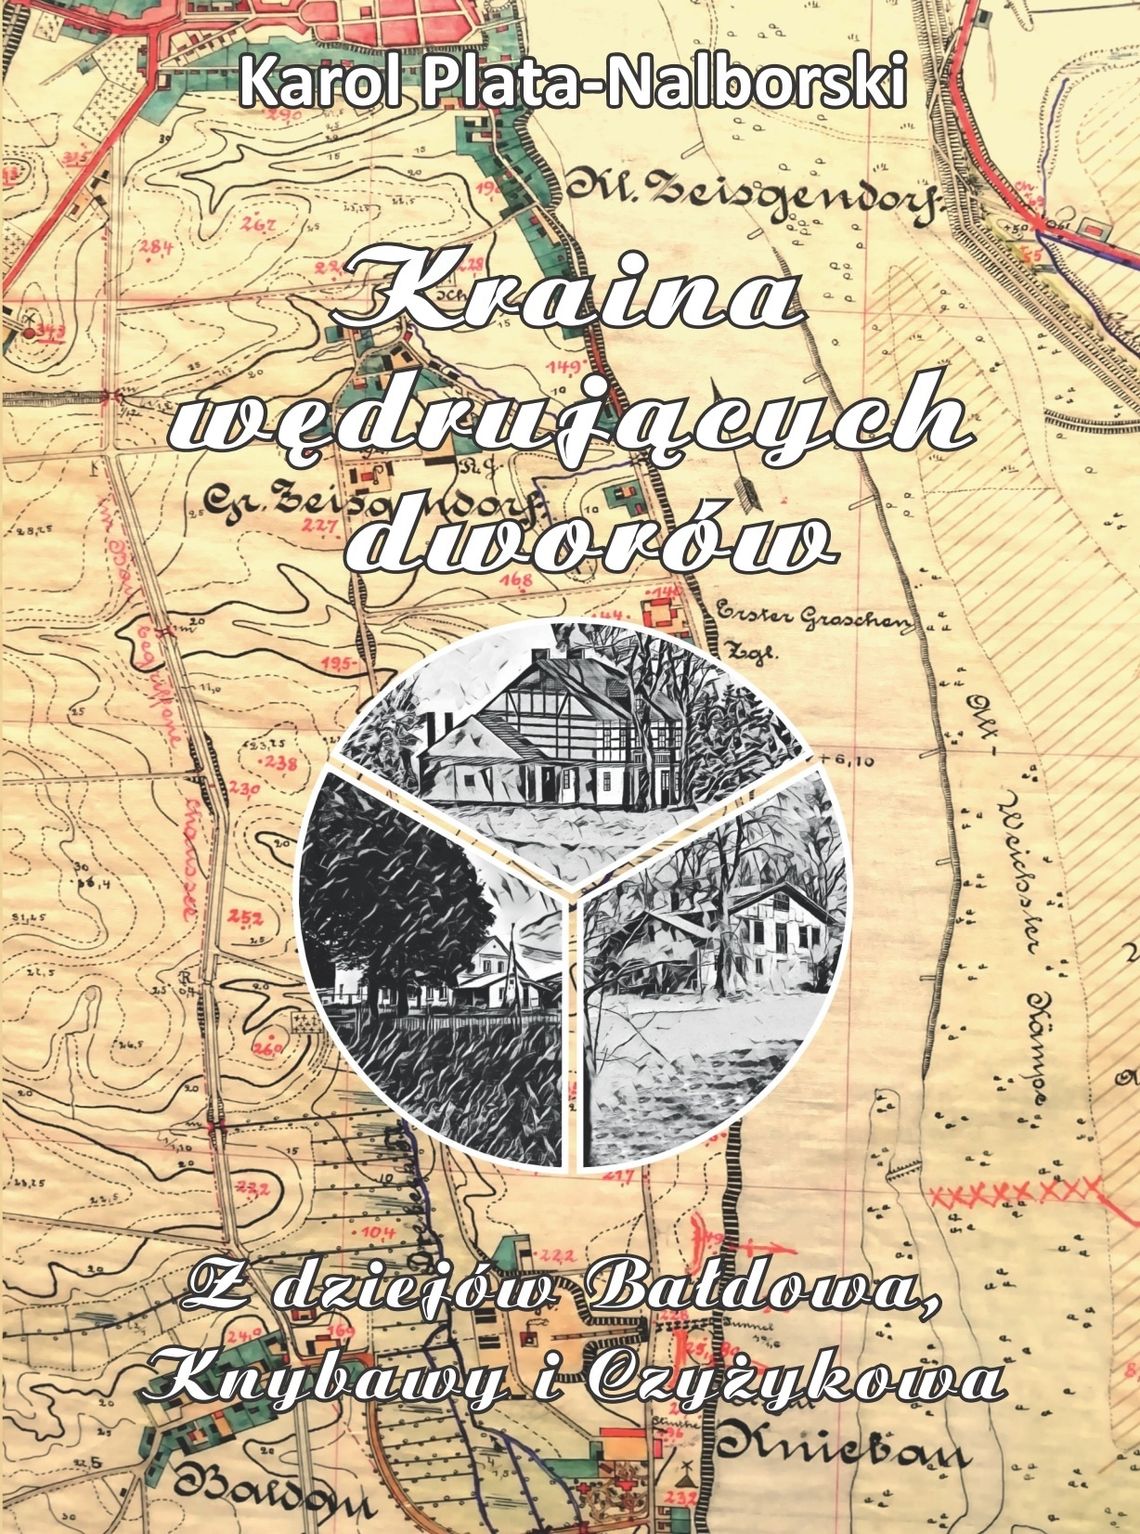 Nowa publikacja odsłania zapomnianą historię Tczewa i okolic [ROZMOWA]